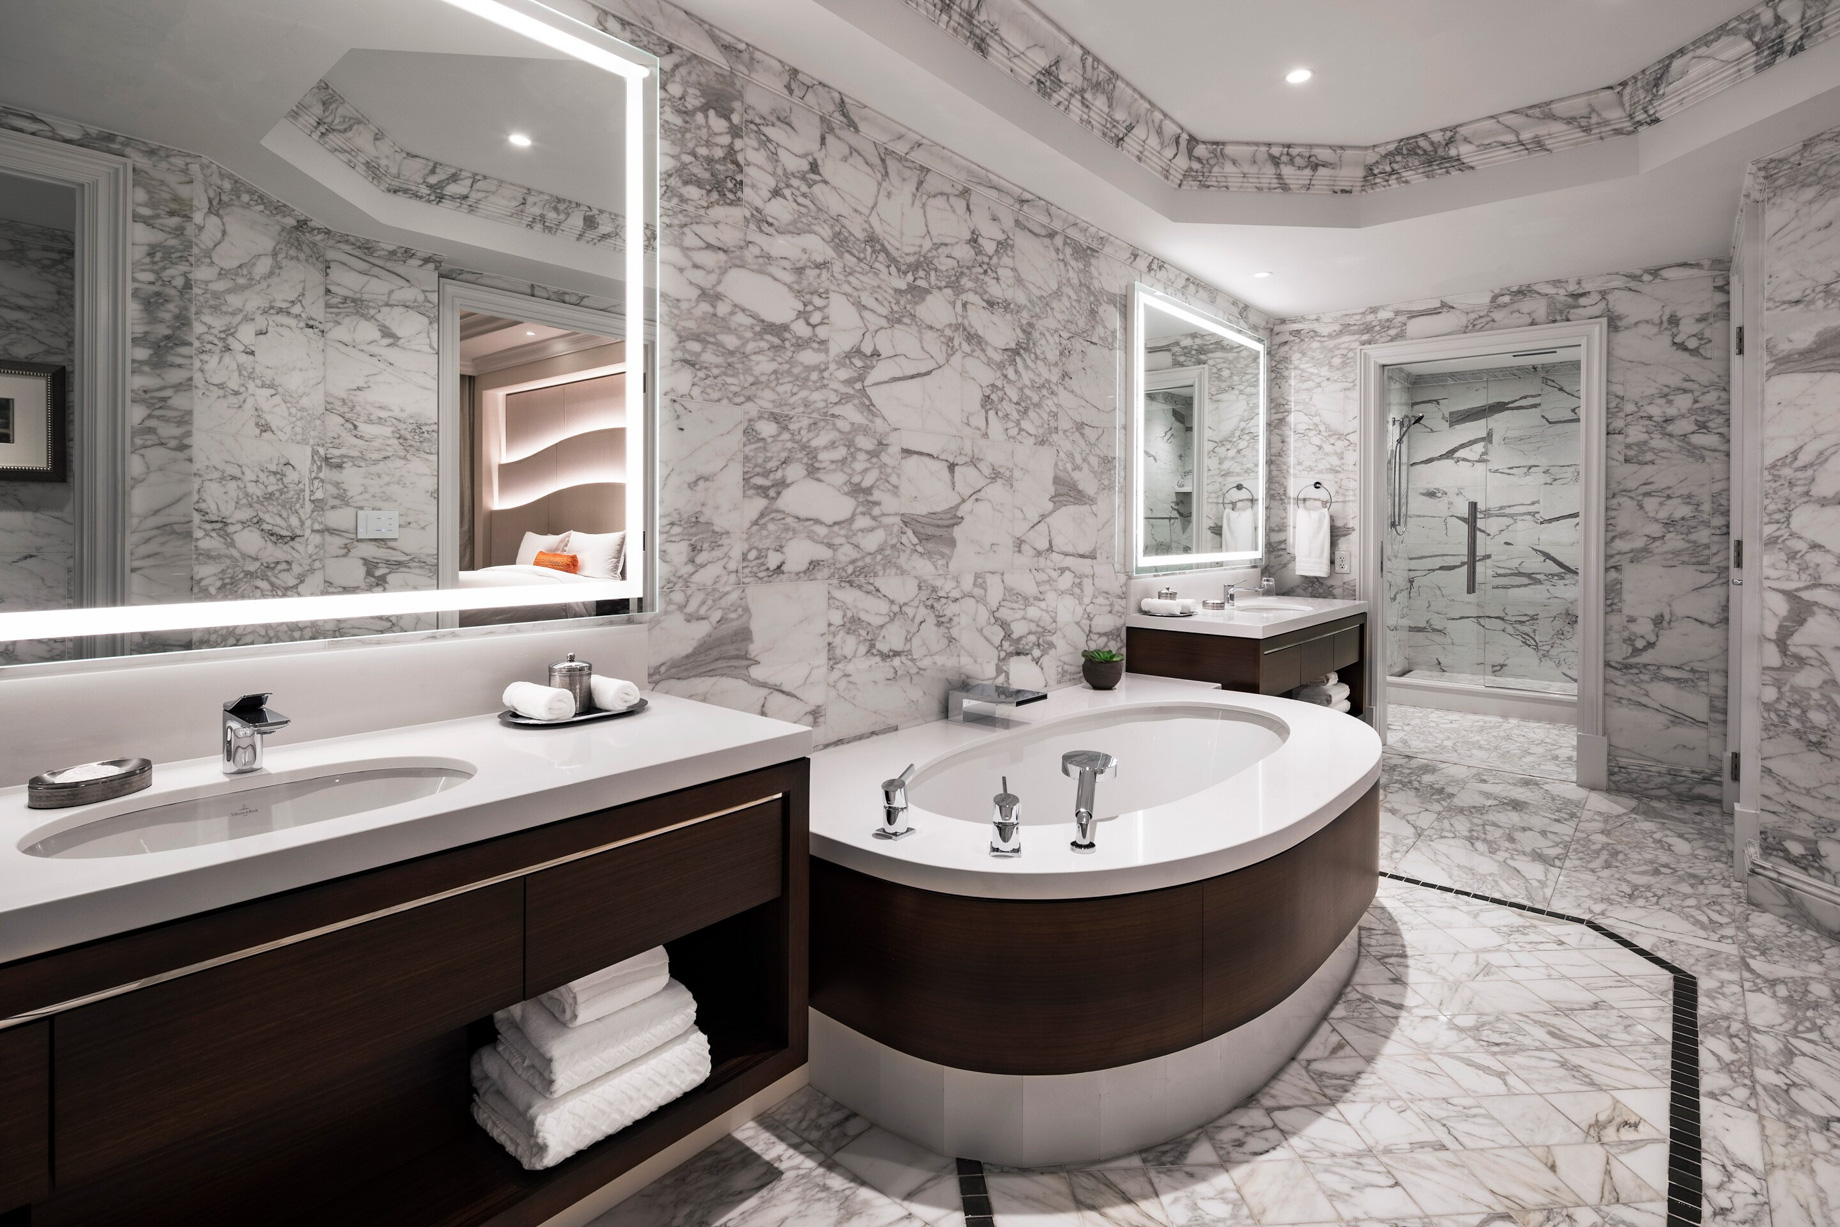 The St. Regis Atlanta Hotel - Atlanta, GA, USA - Empire Suite Bathroom Vanity and Tub